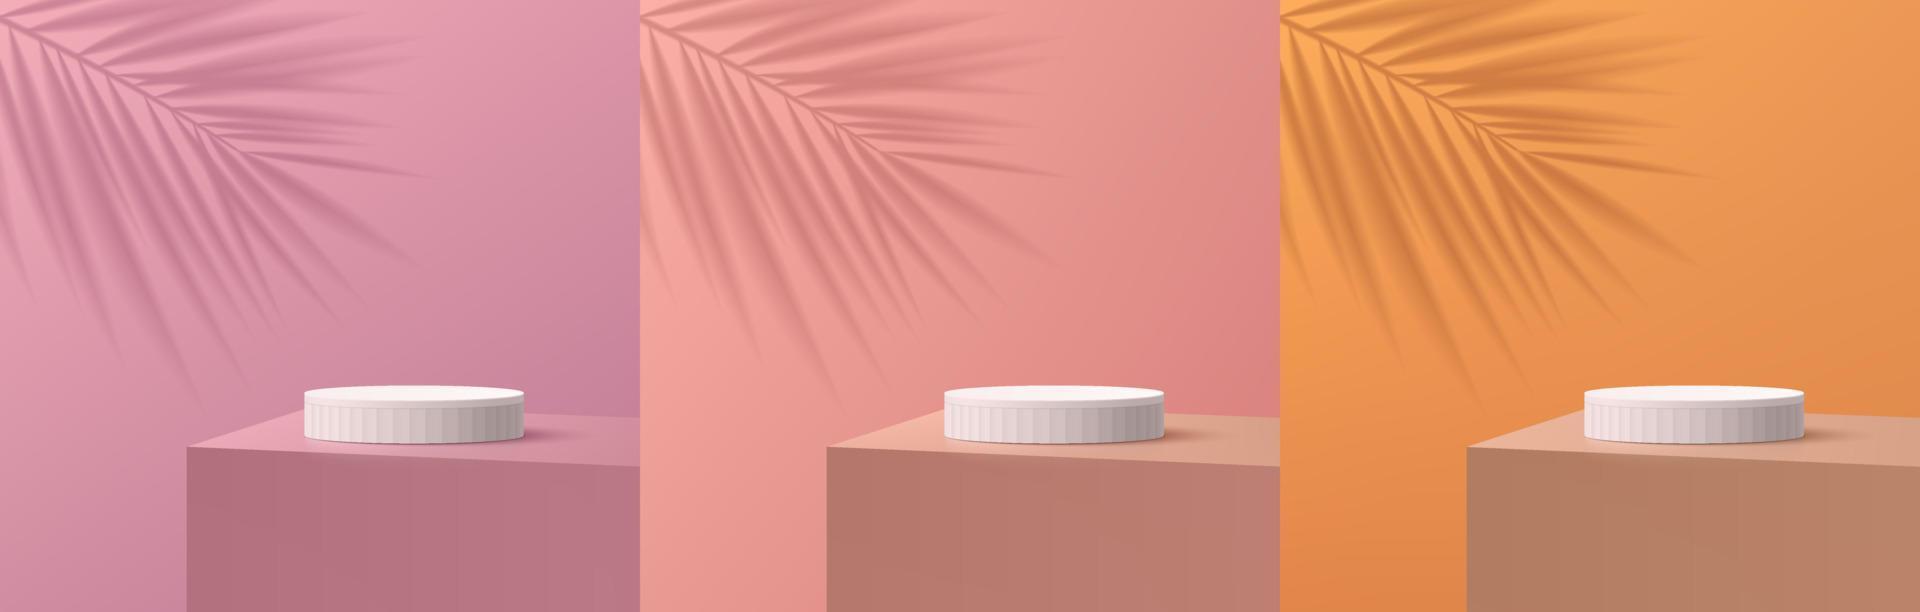 conjunto de podio de soporte de cilindro blanco 3d realista en la mesa de escritorio con fondo rosa, púrpura, naranja y sombra de hoja de palma. forma geométrica abstracta vectorial. exhibición de productos de escena mínima. vitrina escénica. vector